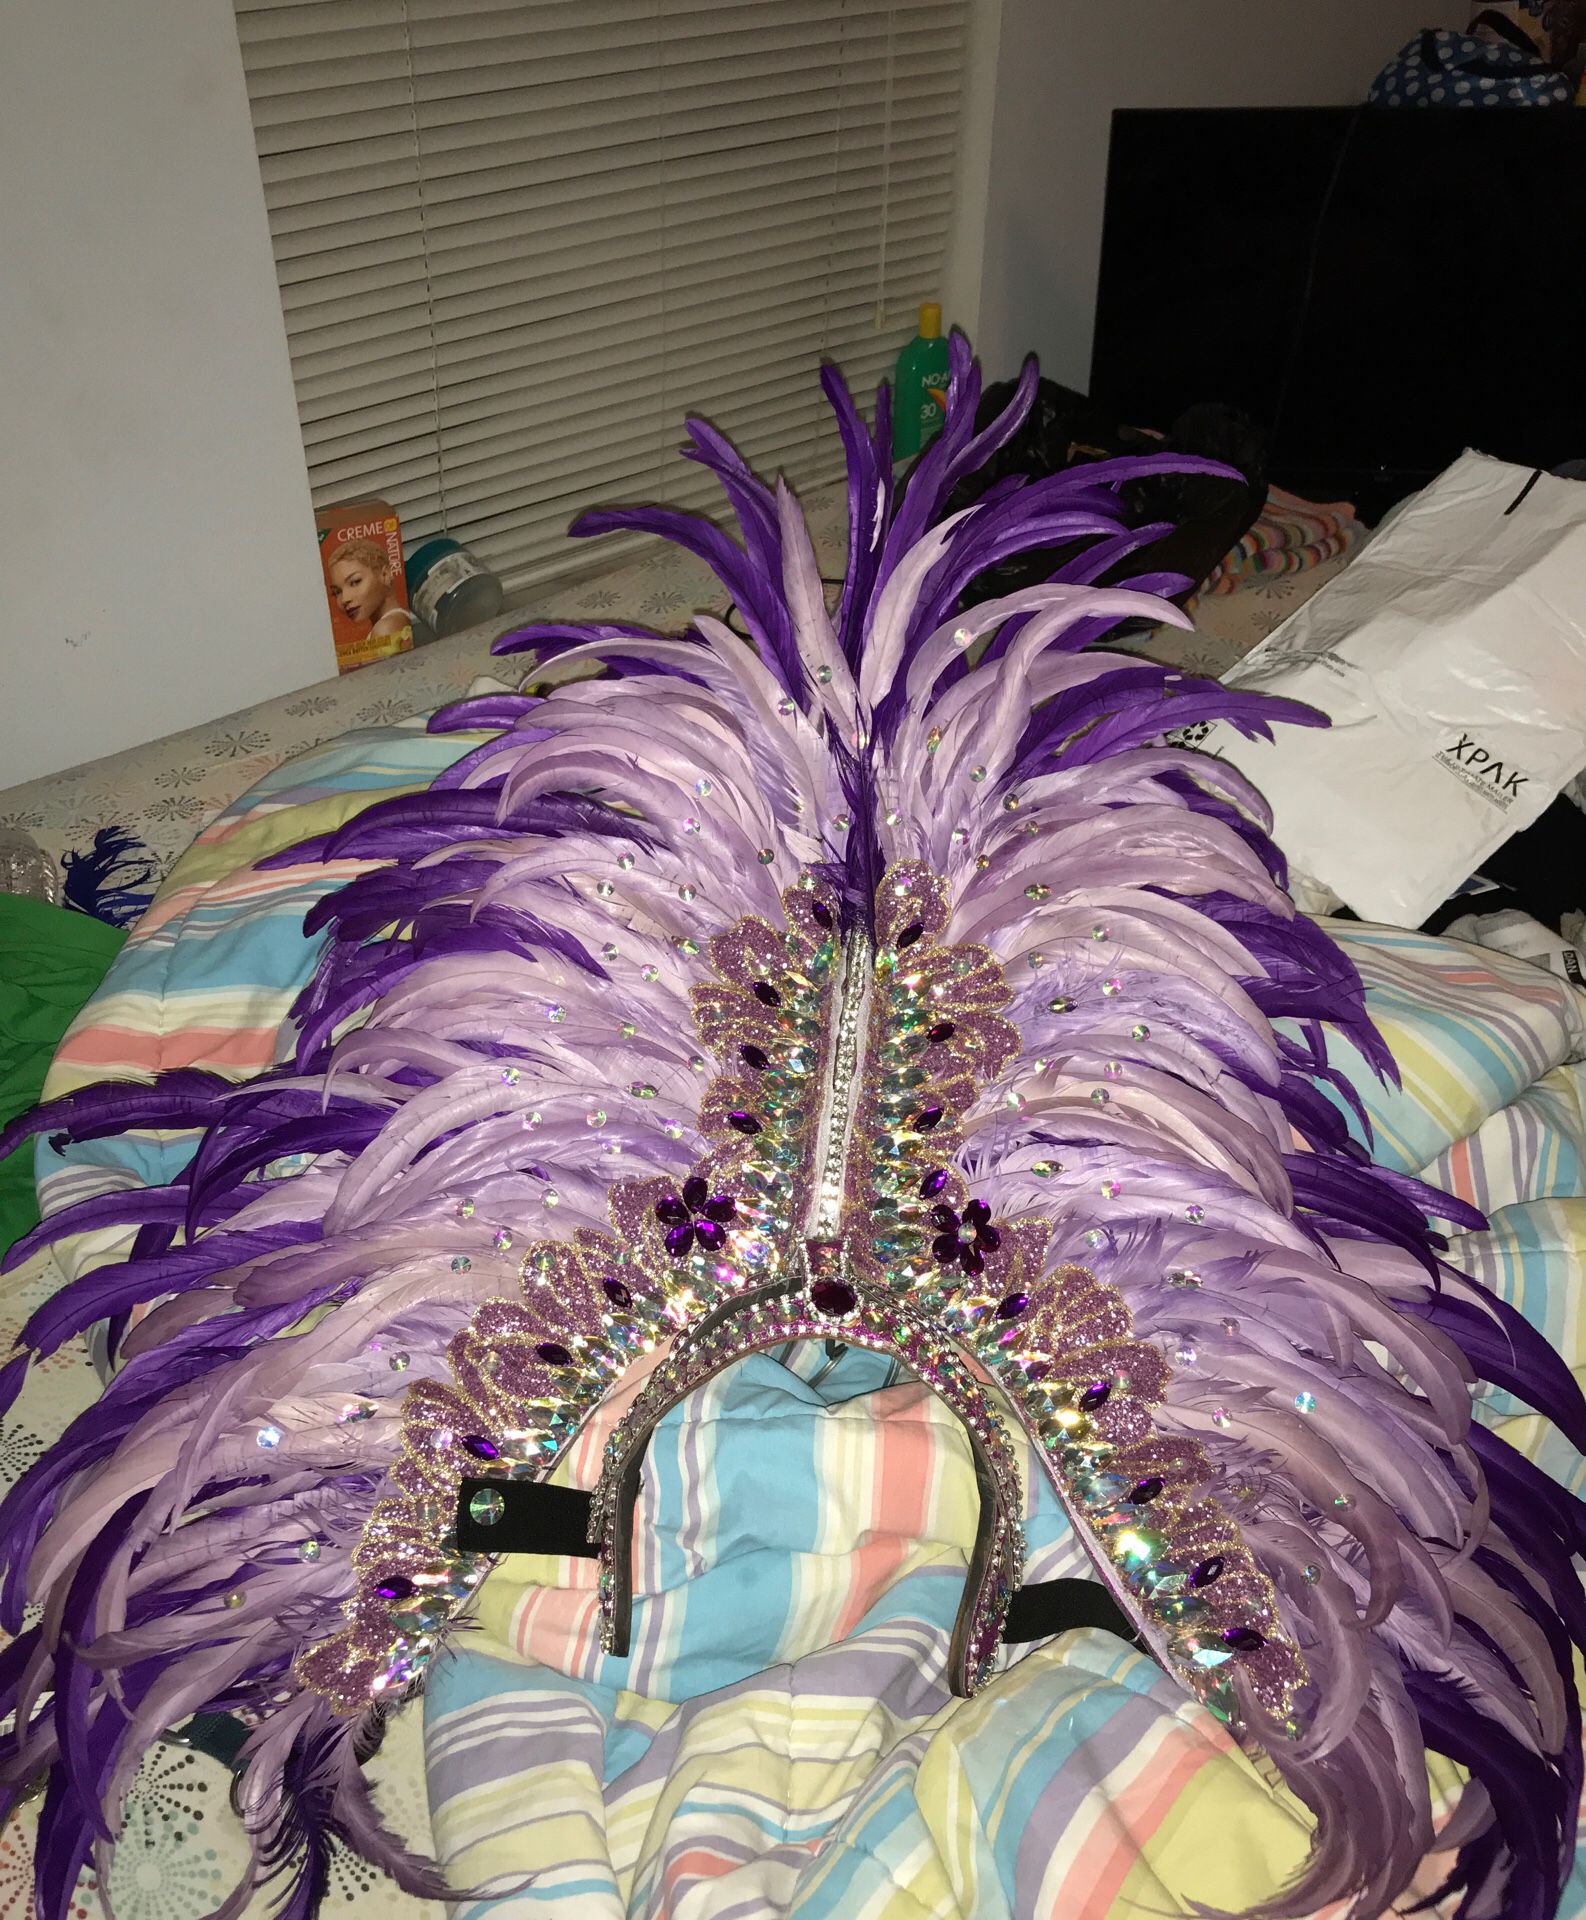 Carnival (samba) headdress